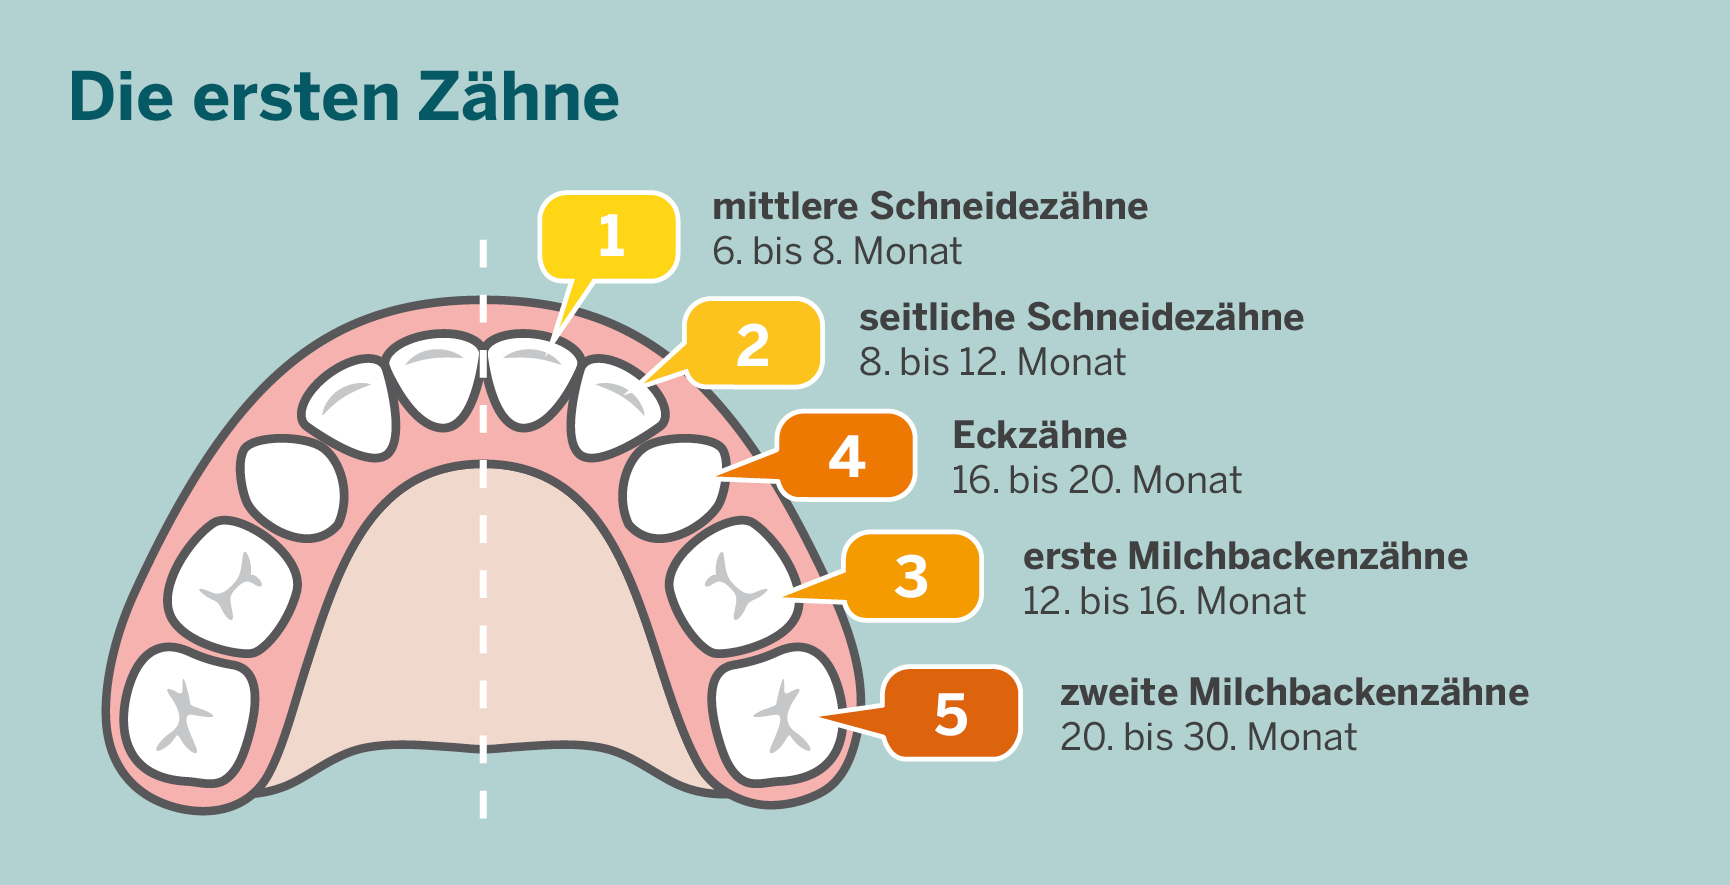 Die Abbildung zeigt ersten Zähnen eines Kindes mit dem Zeitraum, in dem die Zähne in der Regel durchbrechen. Nach den mittleren Schneidezähnen, die zwischen dem 6. und 8. Monat kommen, zeigen sich die seitlichen Schneidezähne zwischen dem 8. und dem 12. Monat. Zwischen dem 12. und 16. Monat kommen die ersten Milchbackenzähne bevor zwischen dem 16. und dem 20. Monat die Eckzähne folgen. Zwischen dem 20. und dem 30. Monat erfolgt der Durchbruch der zweiten Milchbackenzähne.